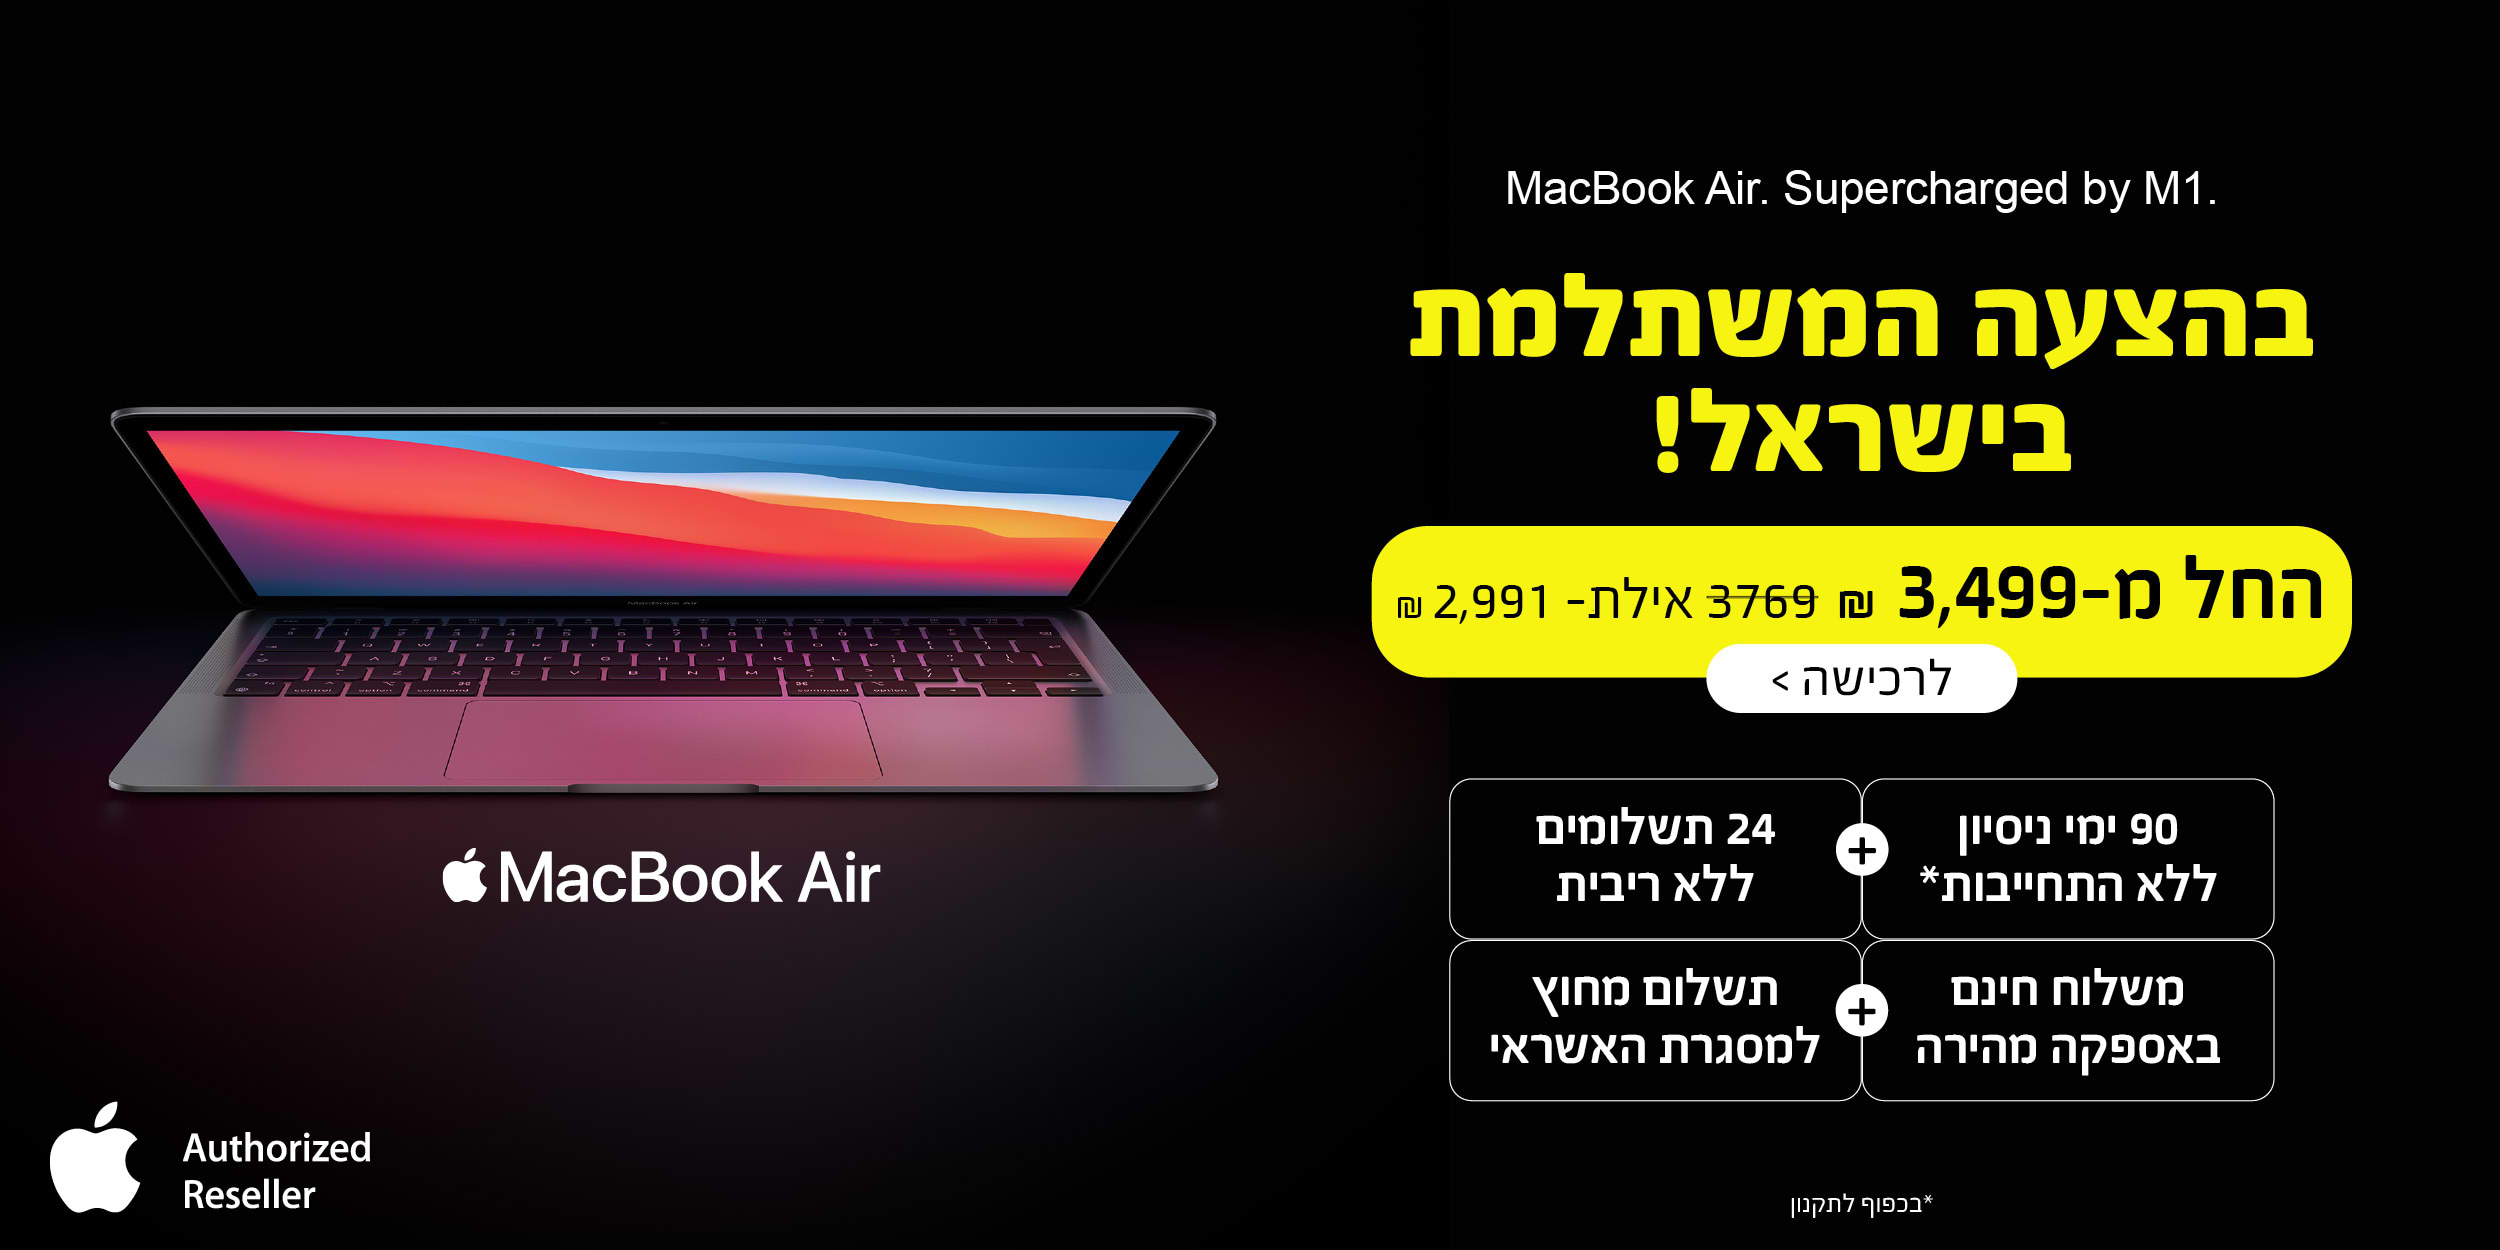 MacBook Air.Supercharged by M1. בהצעה המשתלמת בישראל! החל מ- 3,499 ש